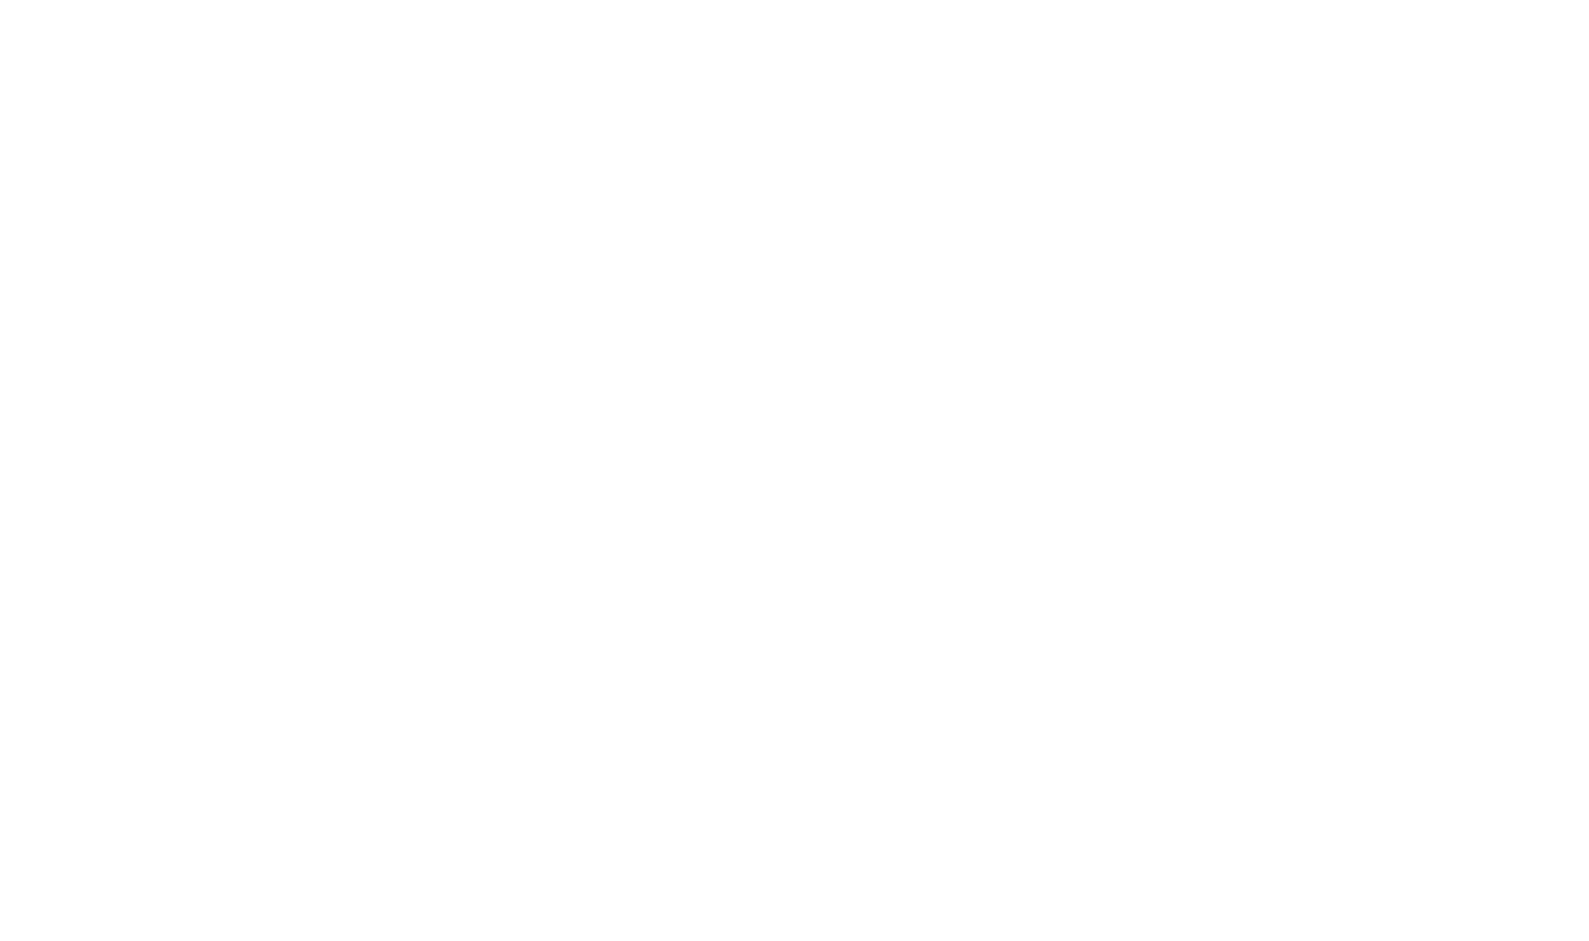 Generali logo pour fonds sombres (PNG transparent)